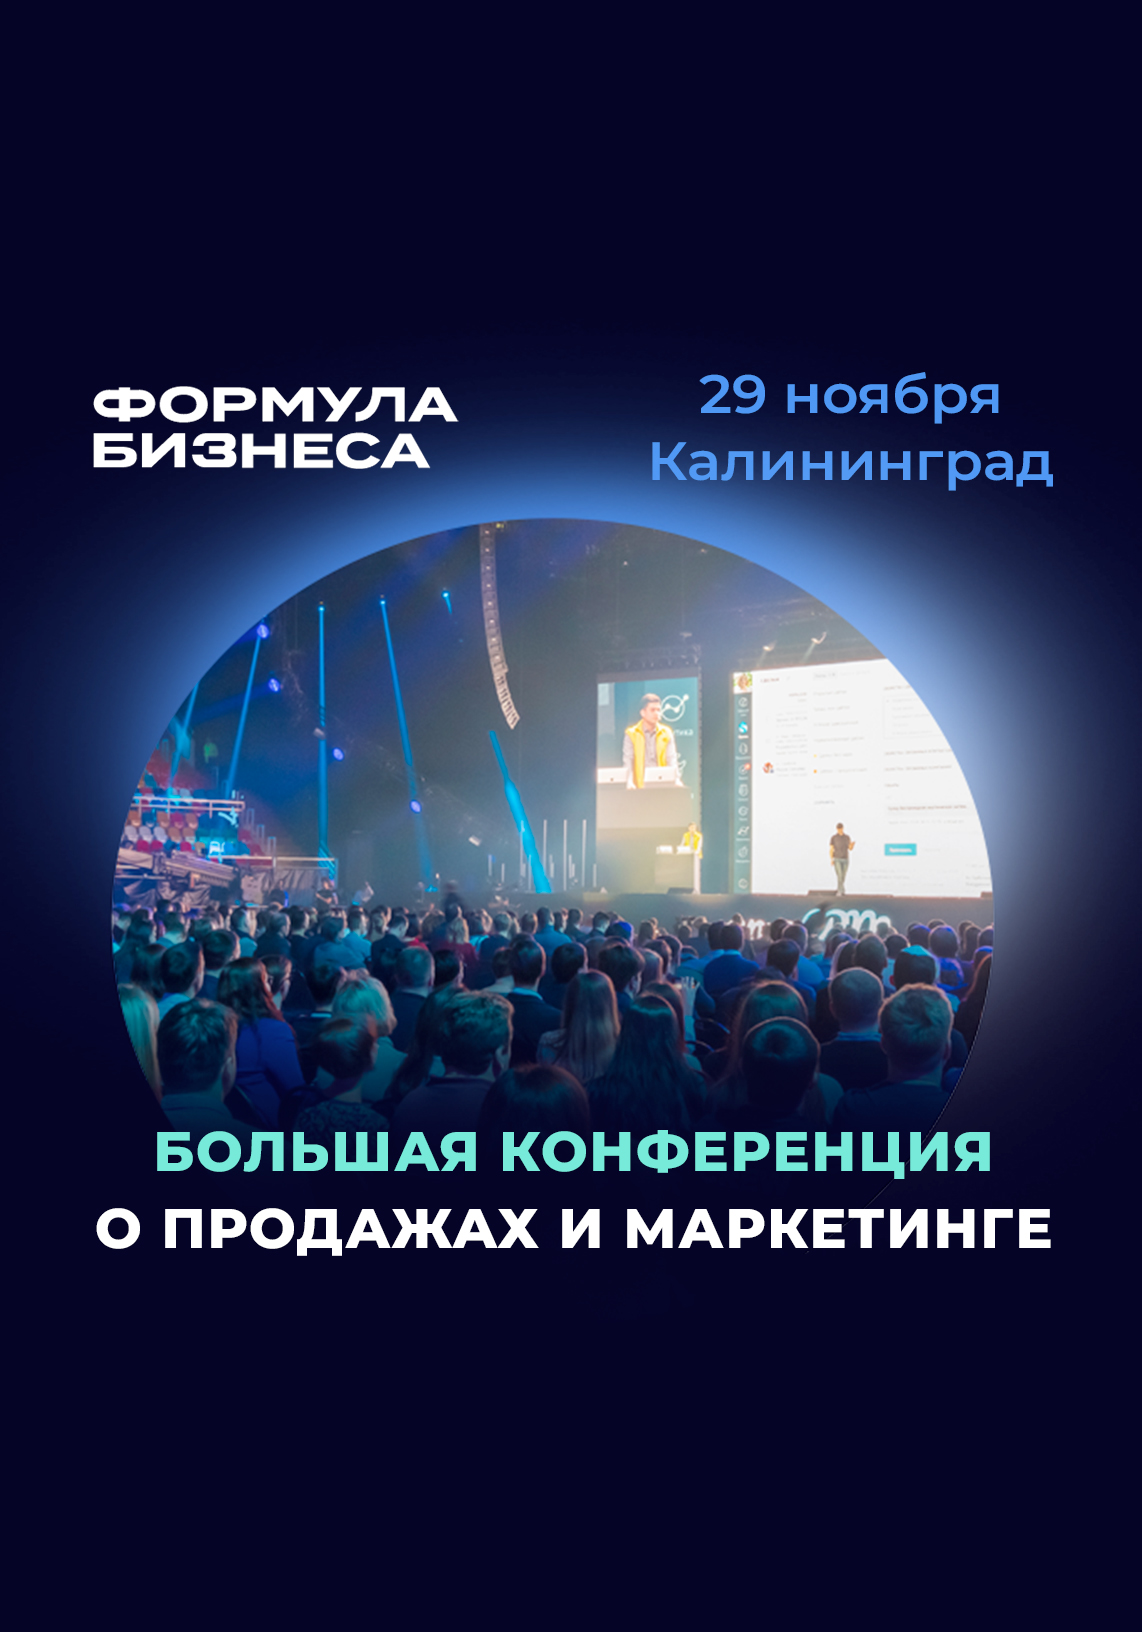 Прокачайте продажи и маркетинг на конференции в Калининграде